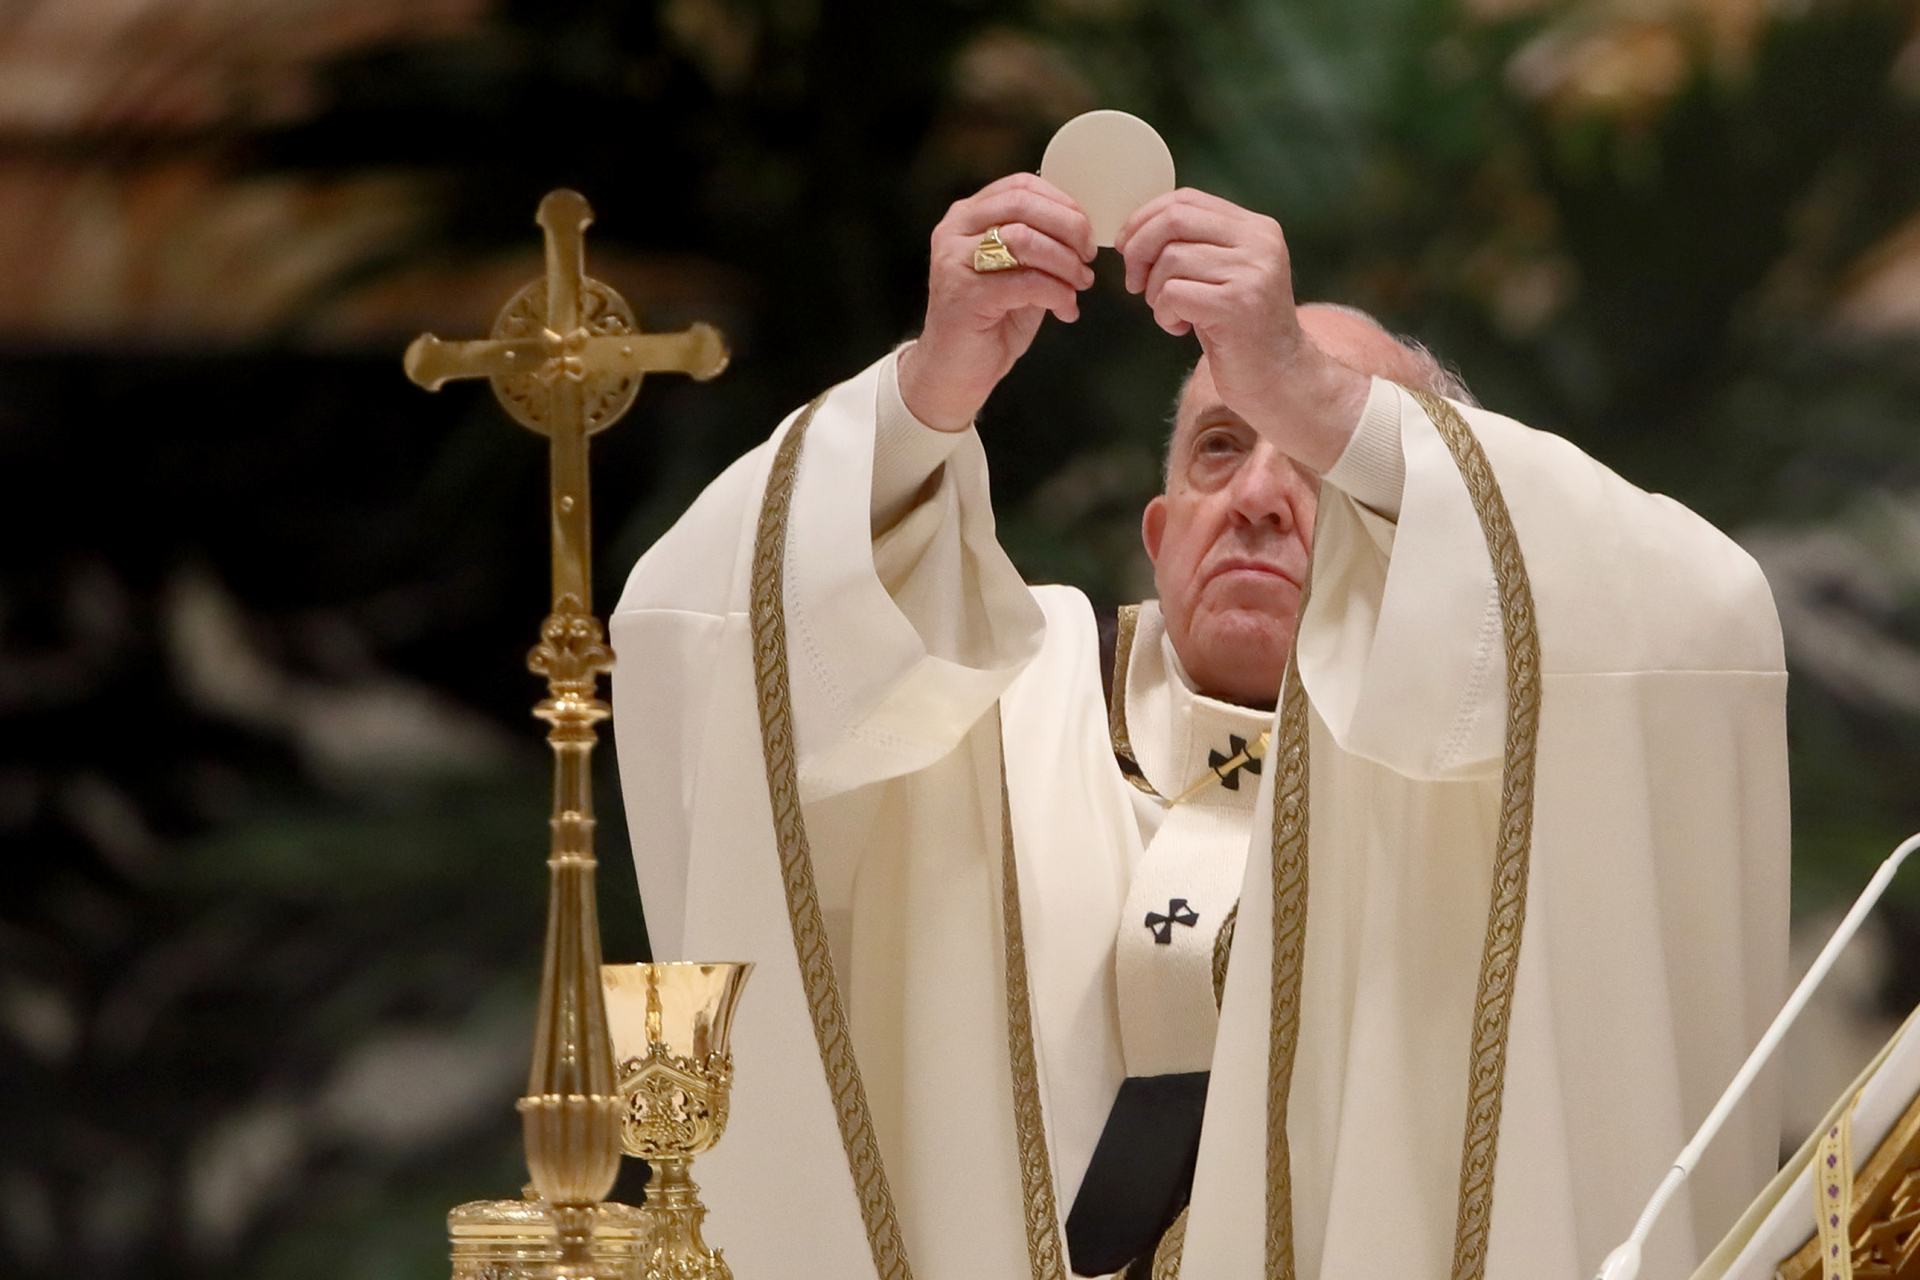 Фото: Vatican Pool/Getty Images